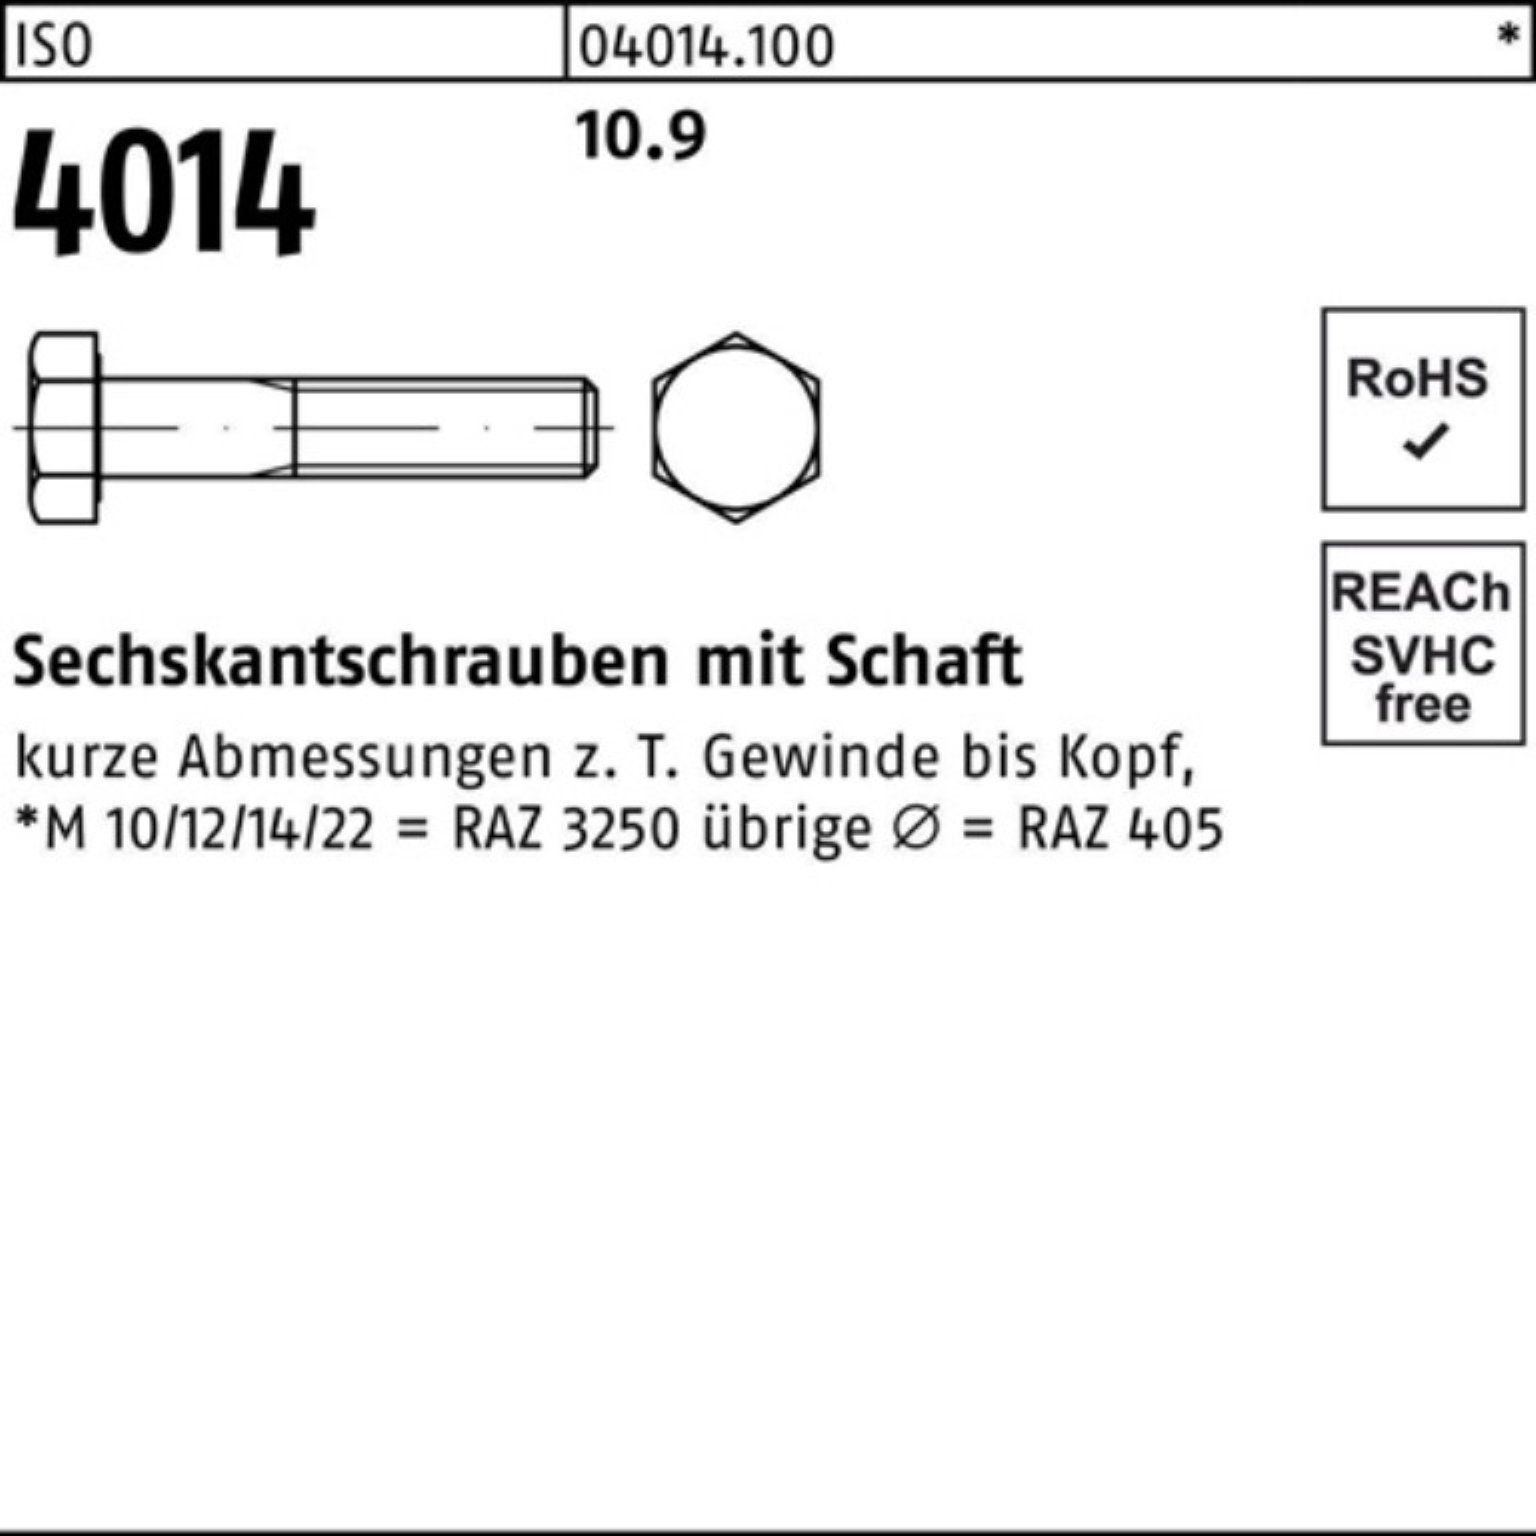 IS Sechskantschraube Bufab 4014 Stück ISO 100er M30x 1 250 Pack Schaft Sechskantschraube 10.9